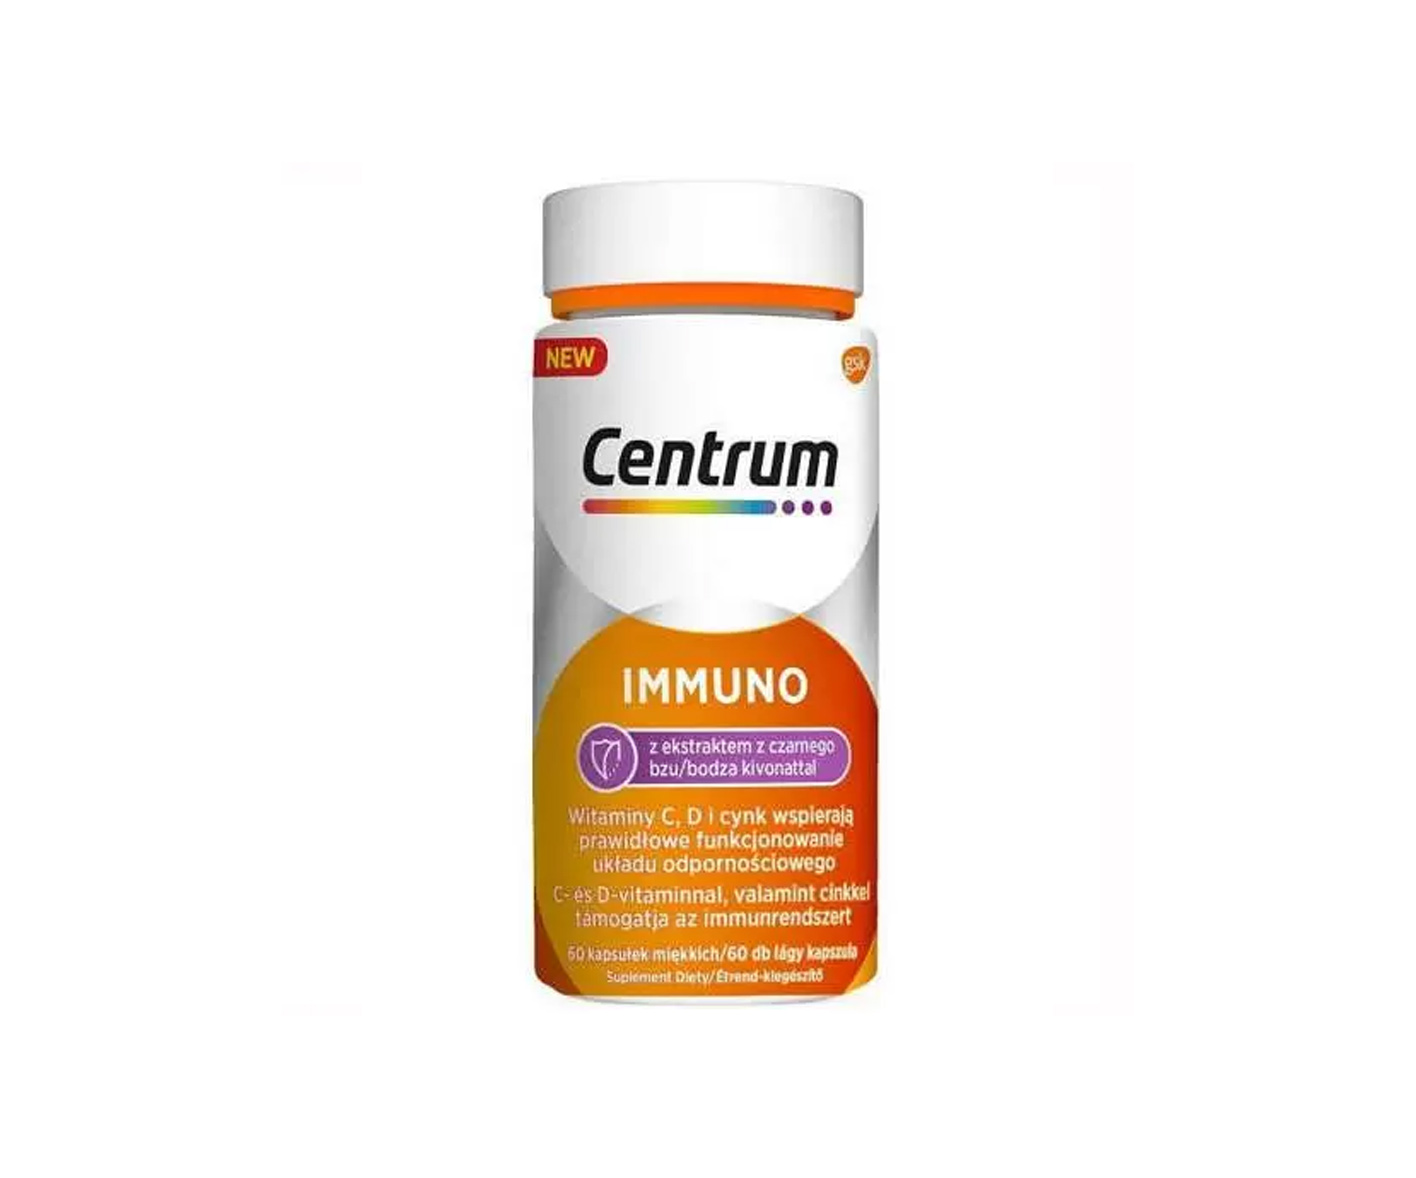 Centrum, Immuno, capsules for immunity